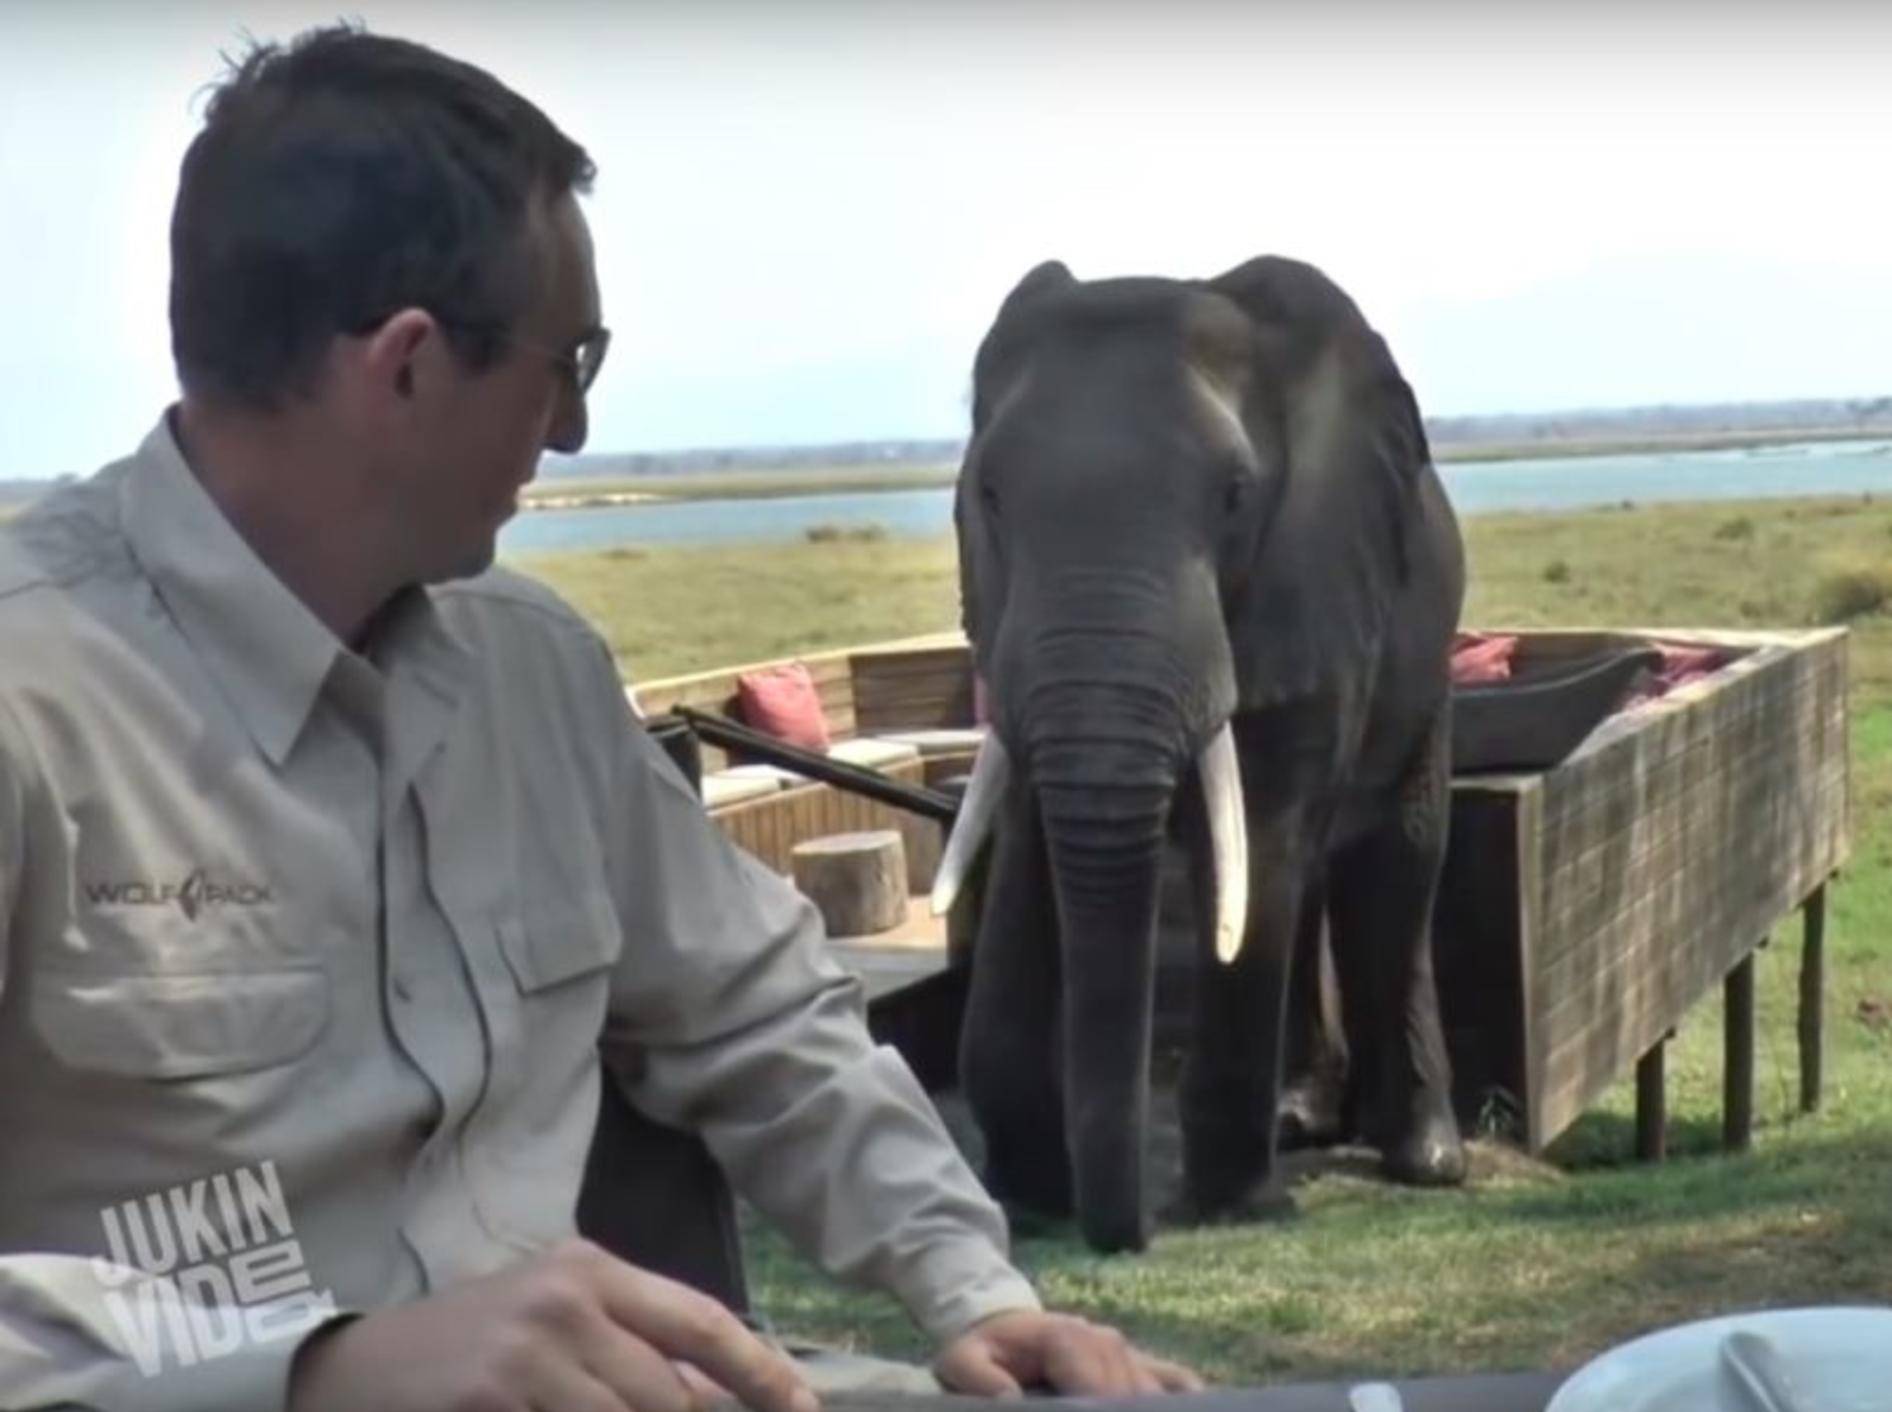 Der Elefant mag wohl keine Touristen – YouTube / JukinVideo